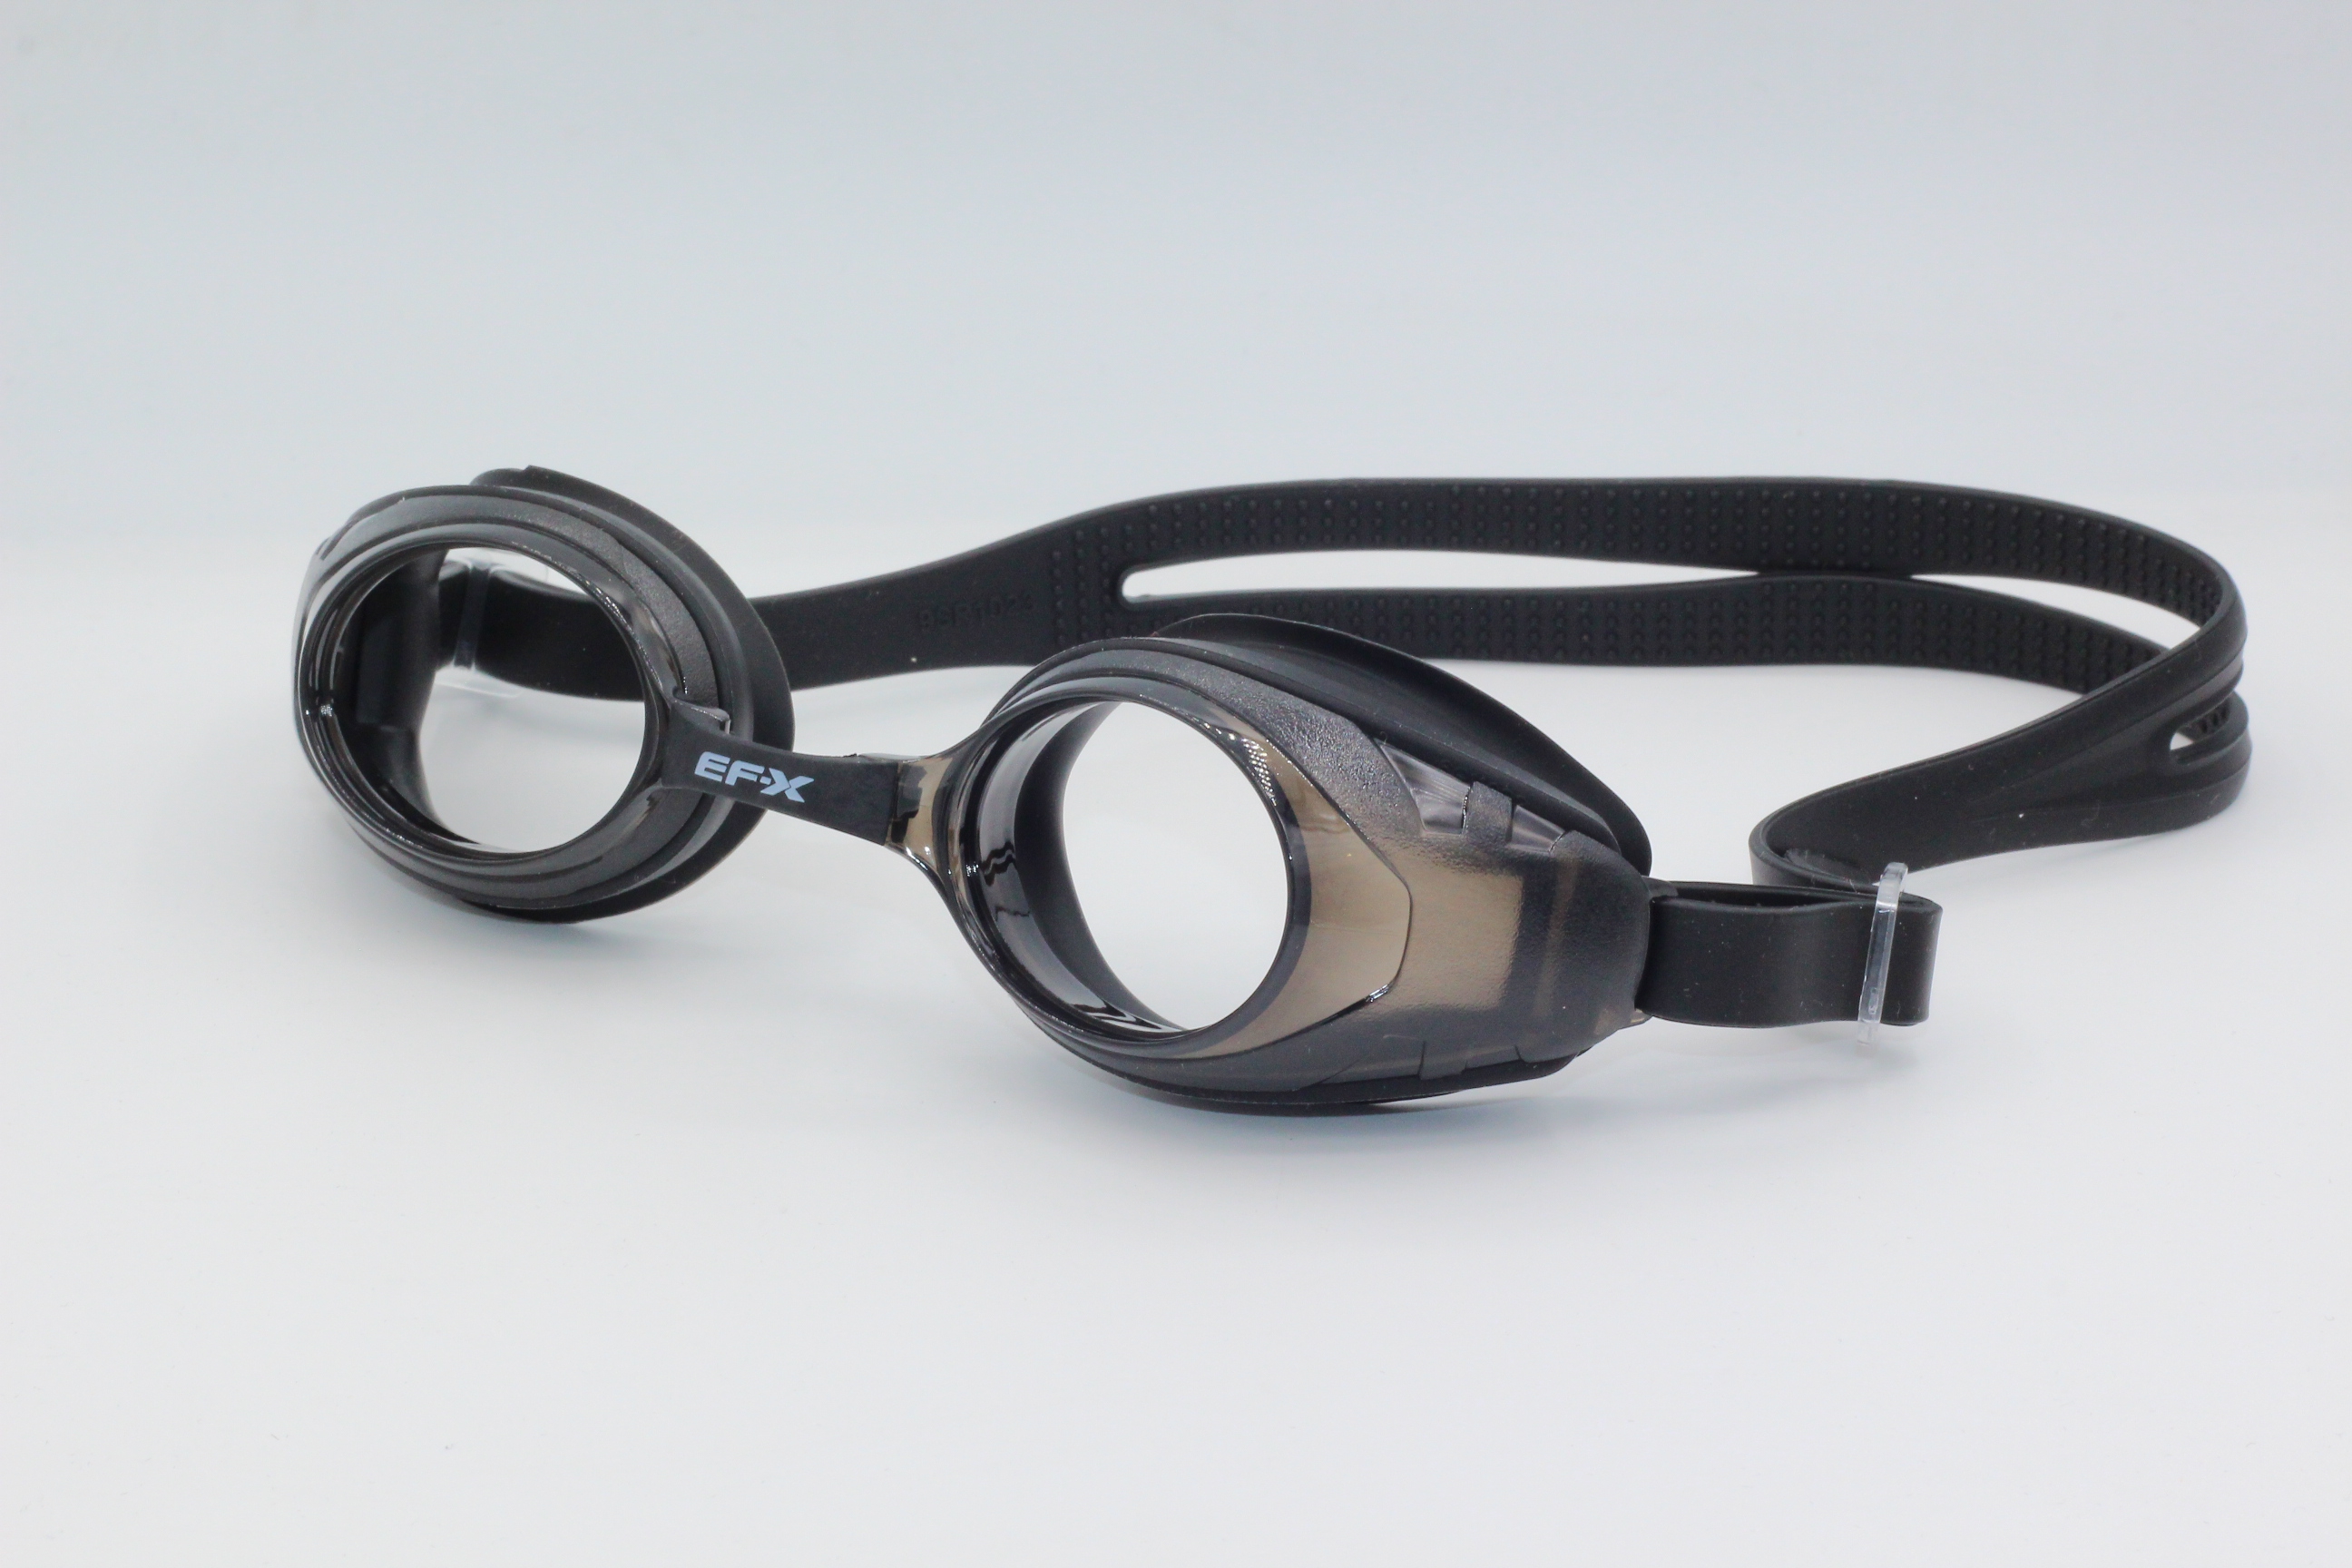 EF-X Numaralı Yüzücü Gözlüğü (Siyah)